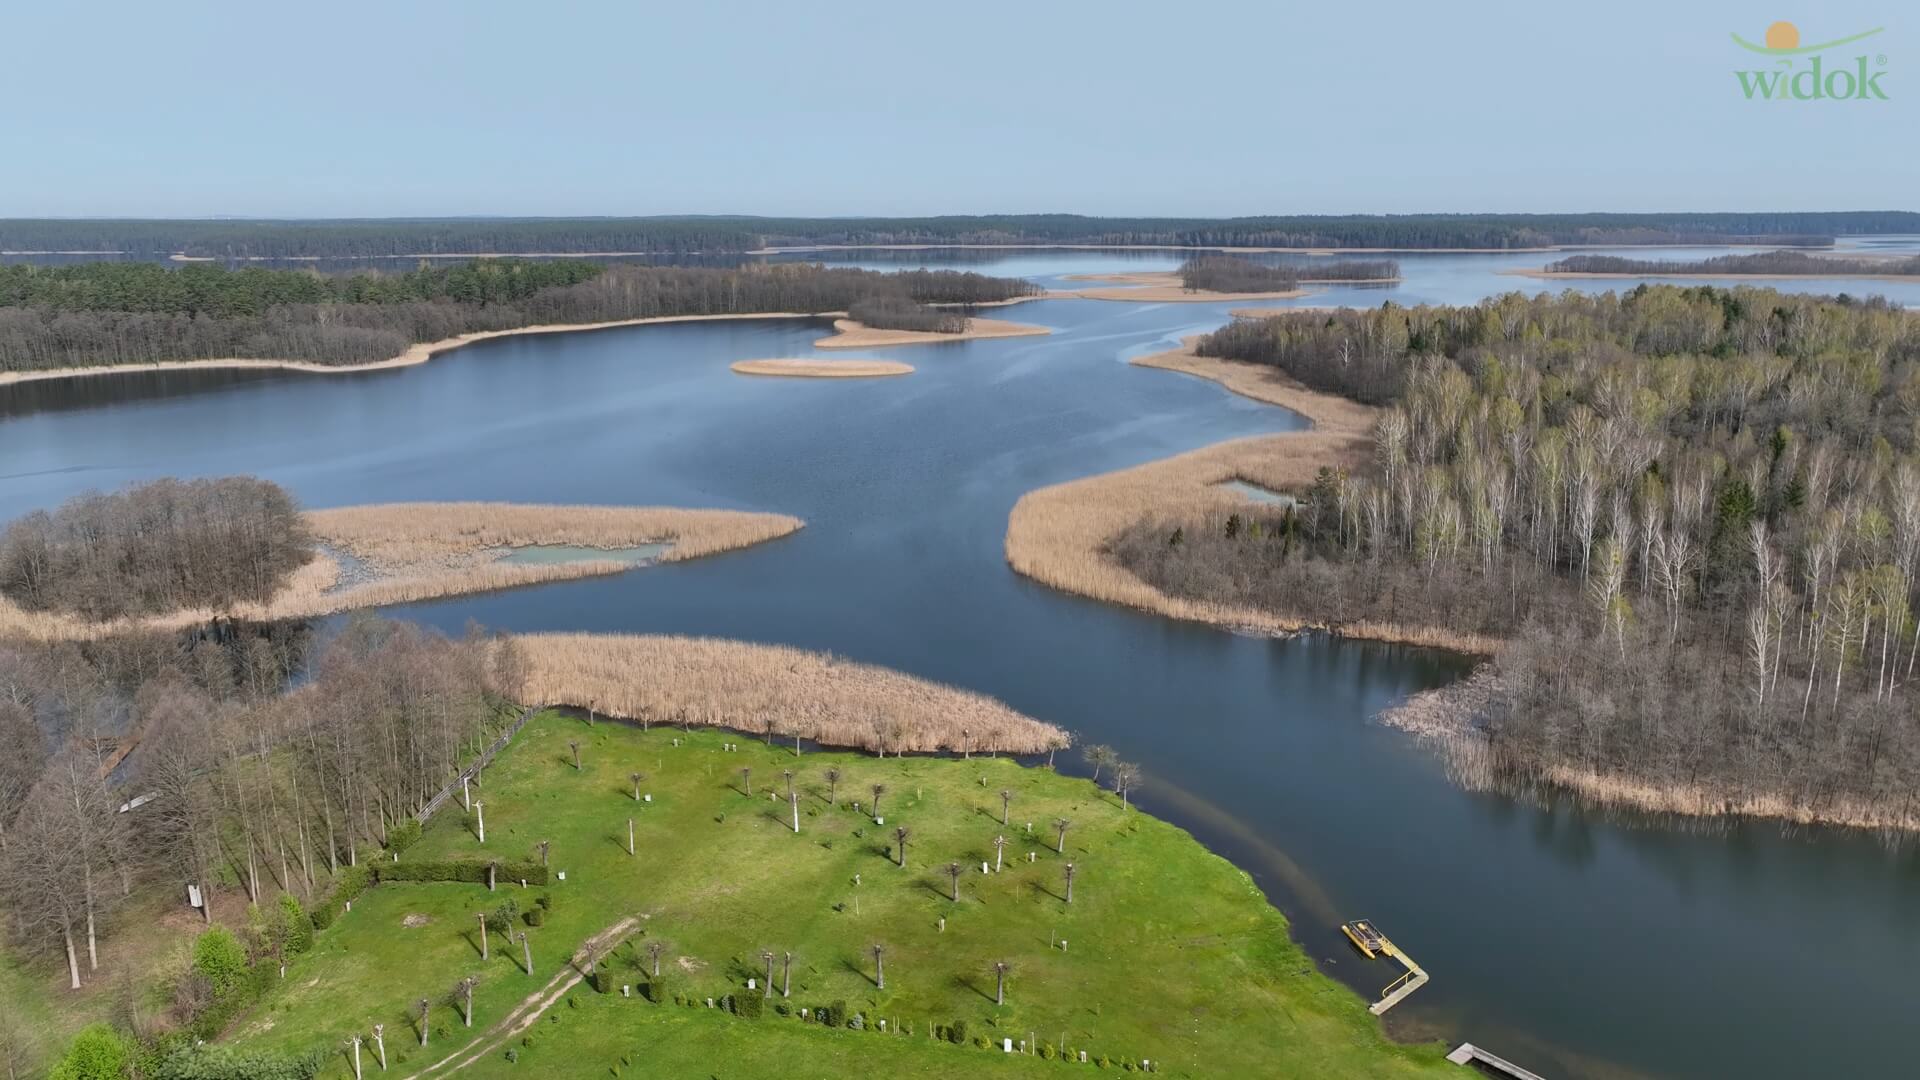 Jezioro Wigry i WIDOK z lotu ptaka - wiosenne nagranie